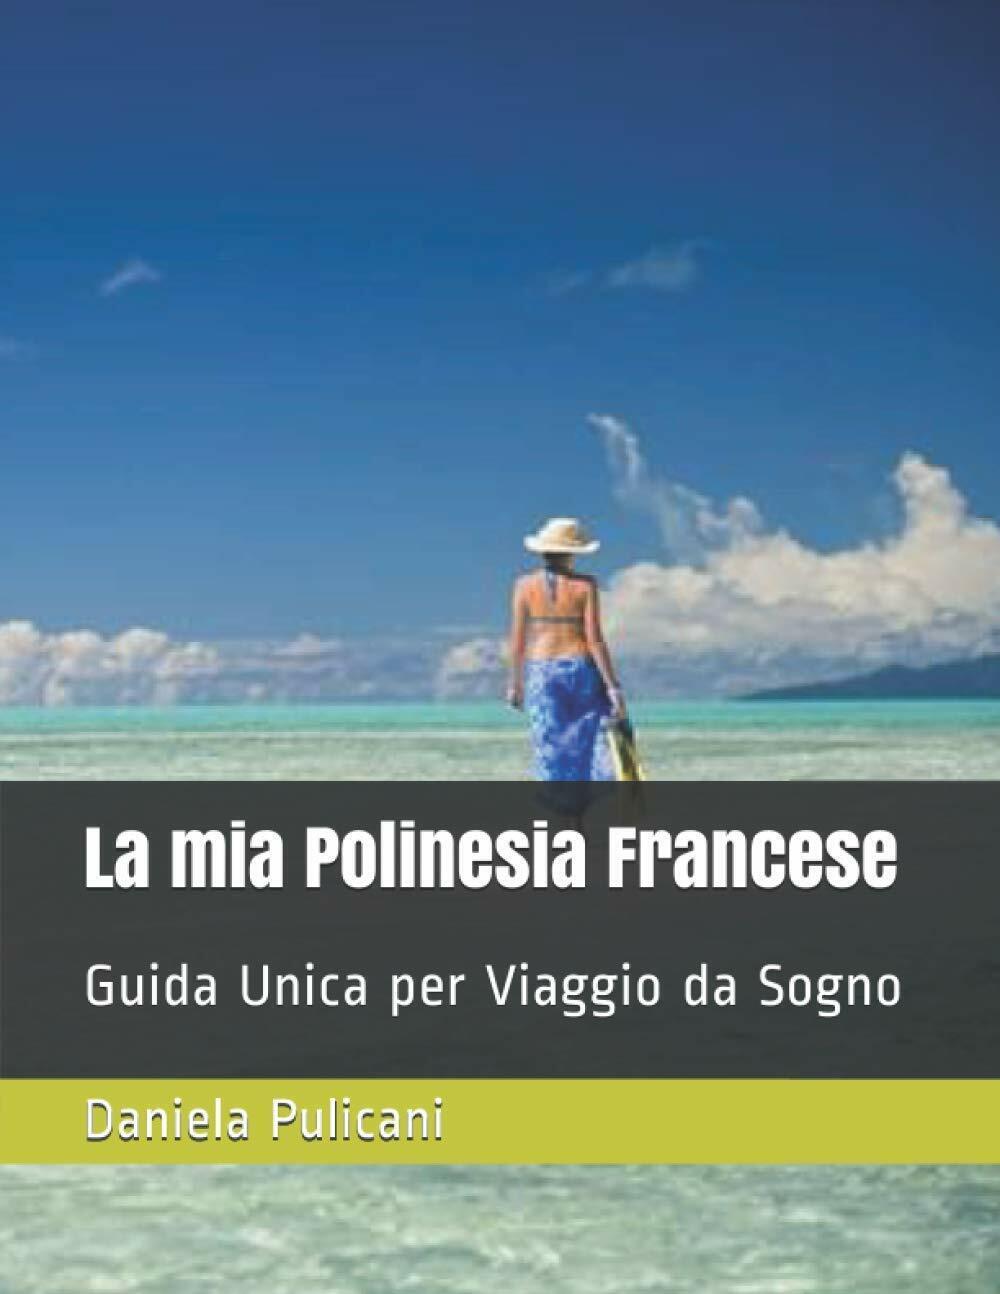 La mia Polinesia Francese: Guida Unica per Viaggio da Sogno di Daniela Pulicani, libro usato